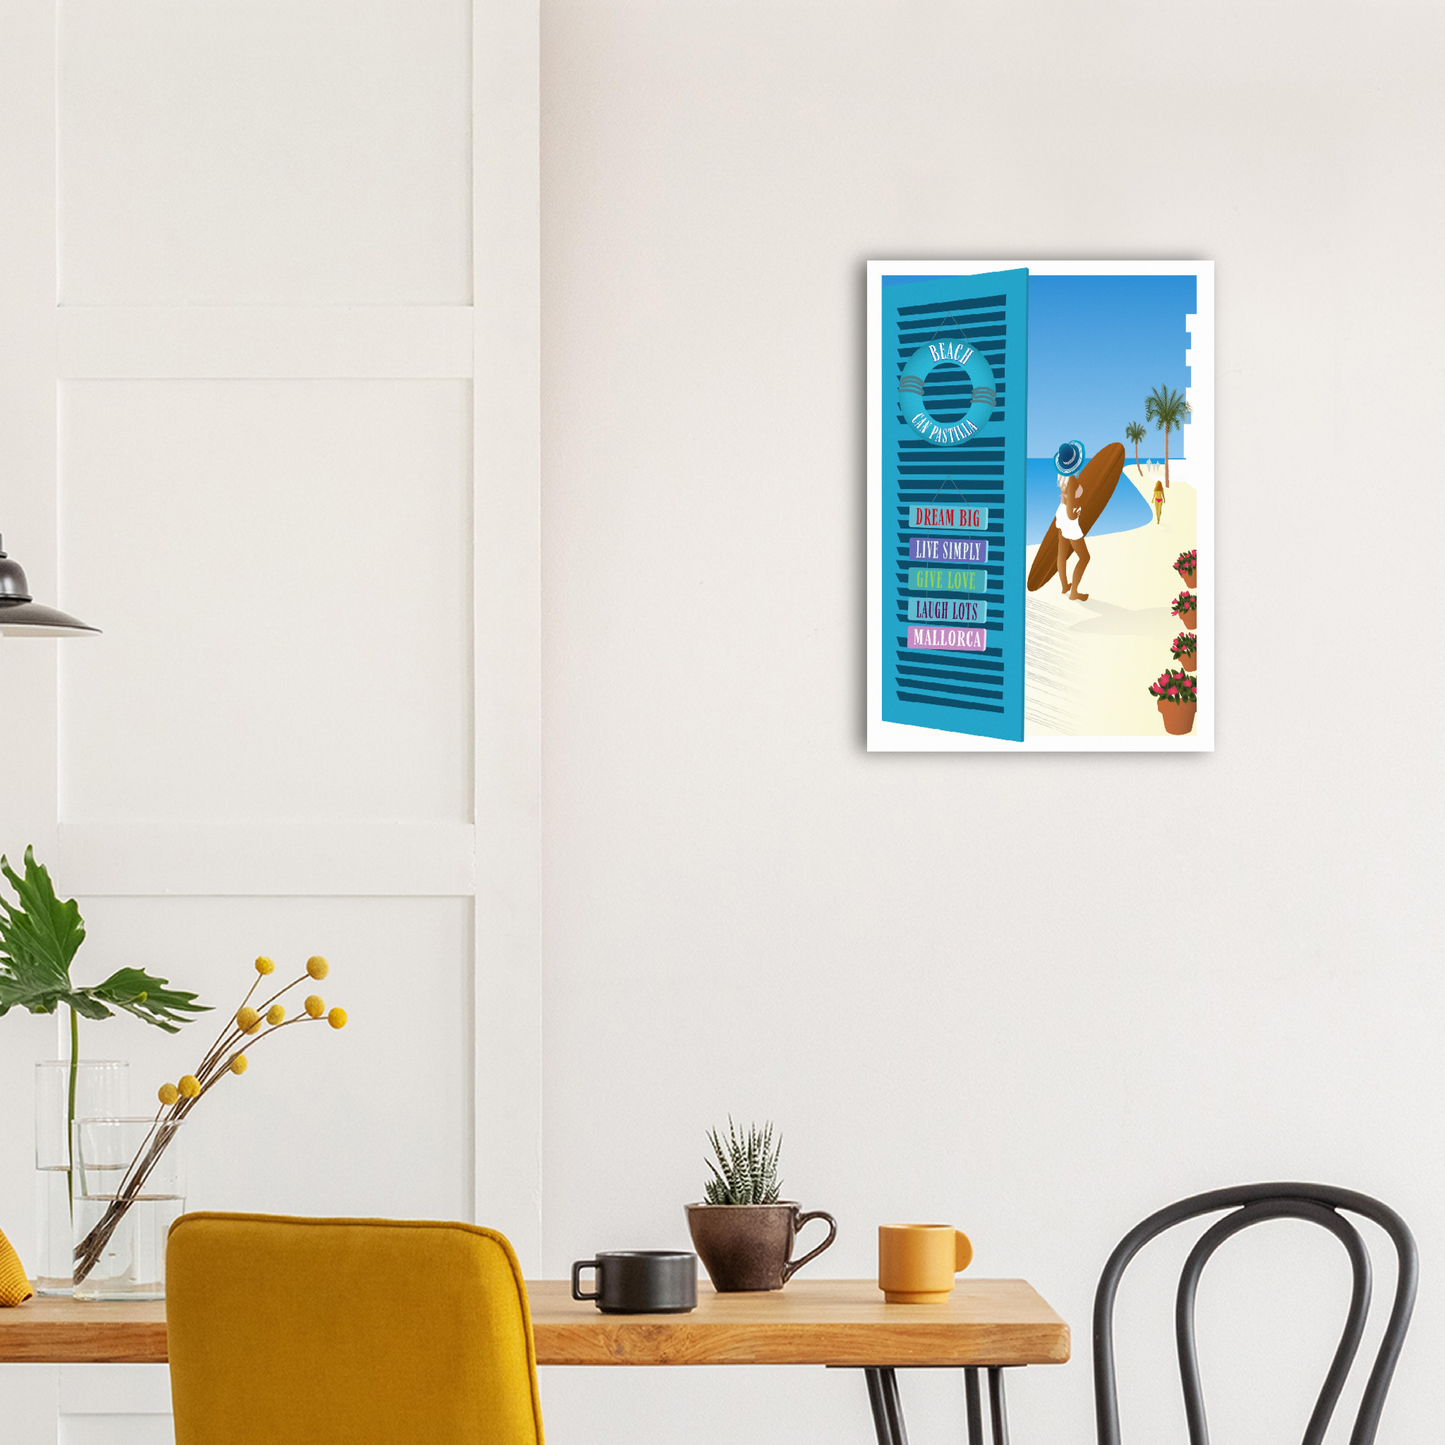 Can Pastilla, Mallorca, Poster on Premium Matte Paper by Posterify Design - Posterify